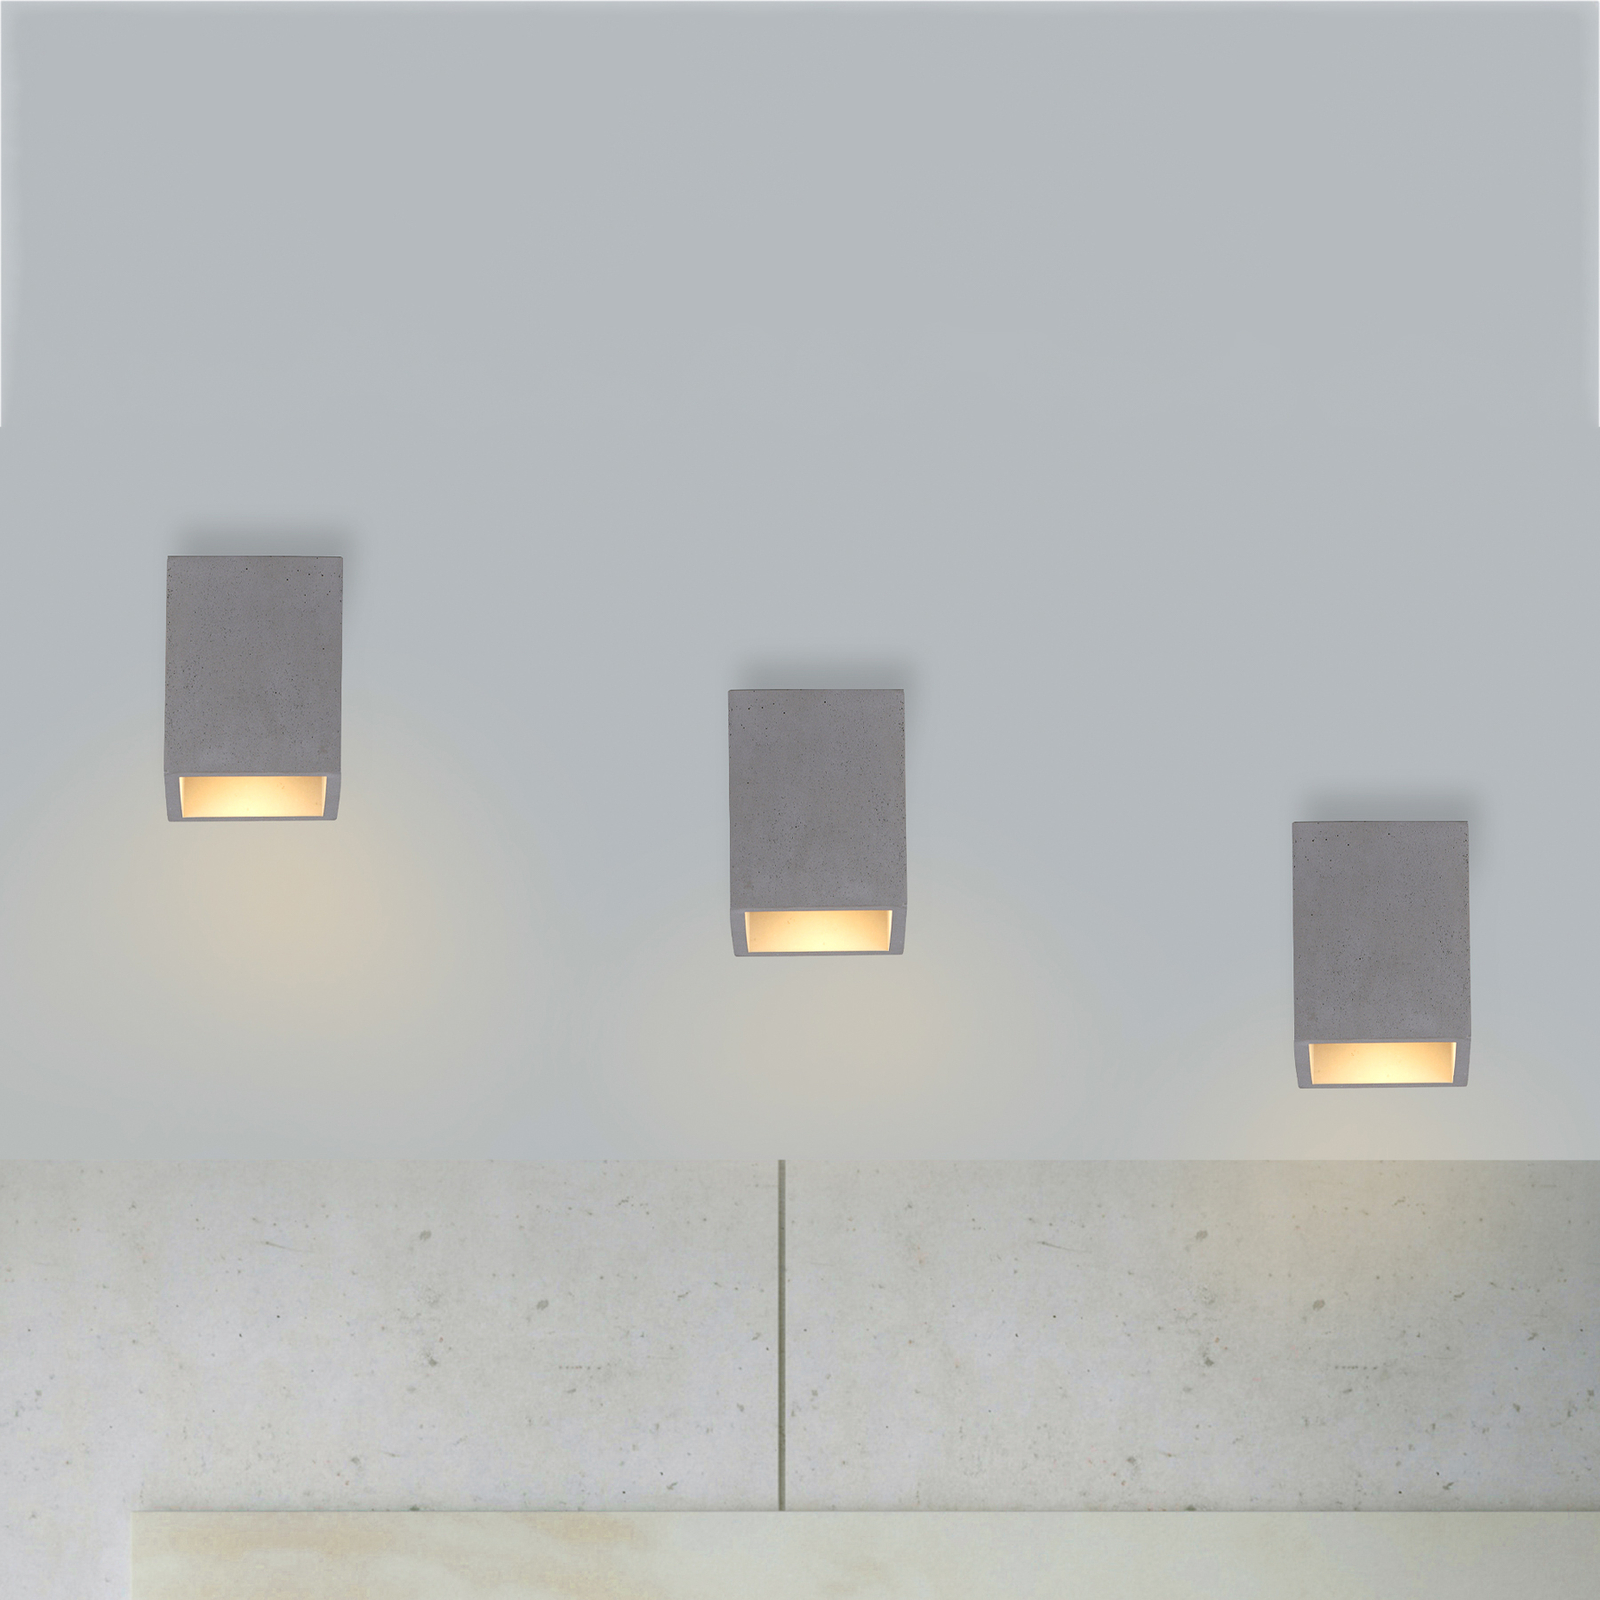 Paul Neuhaus Eton stropní světlo z betonu, hranaté